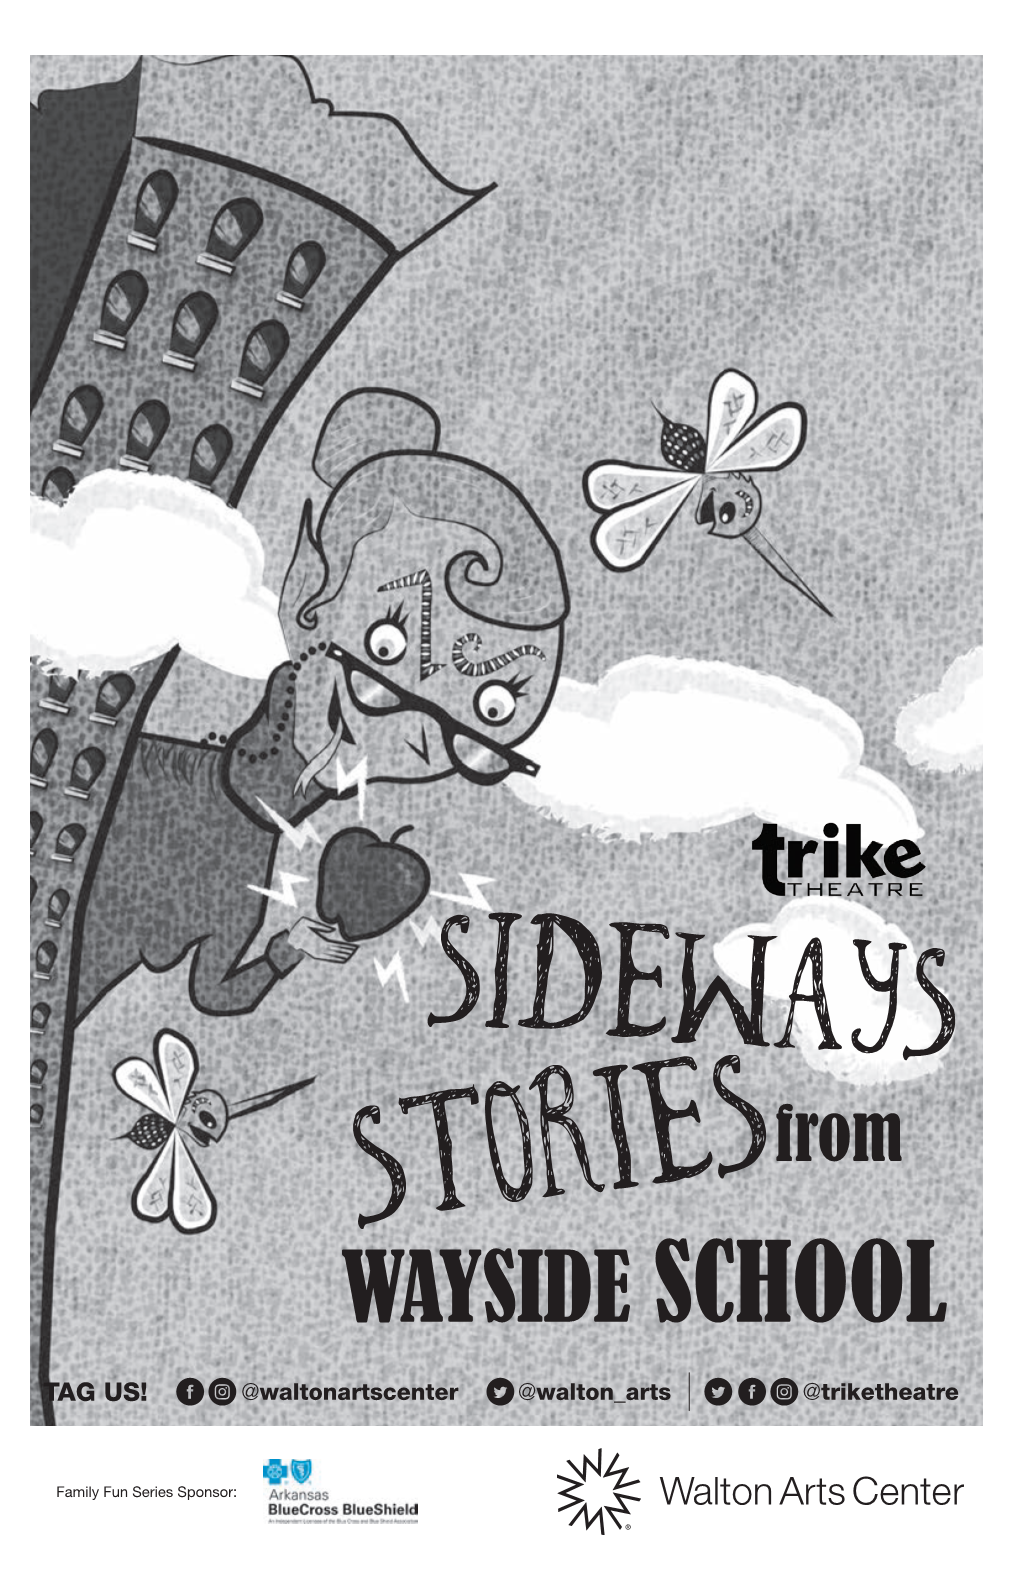 Storiesfrom WAYSIDE SCHOOL